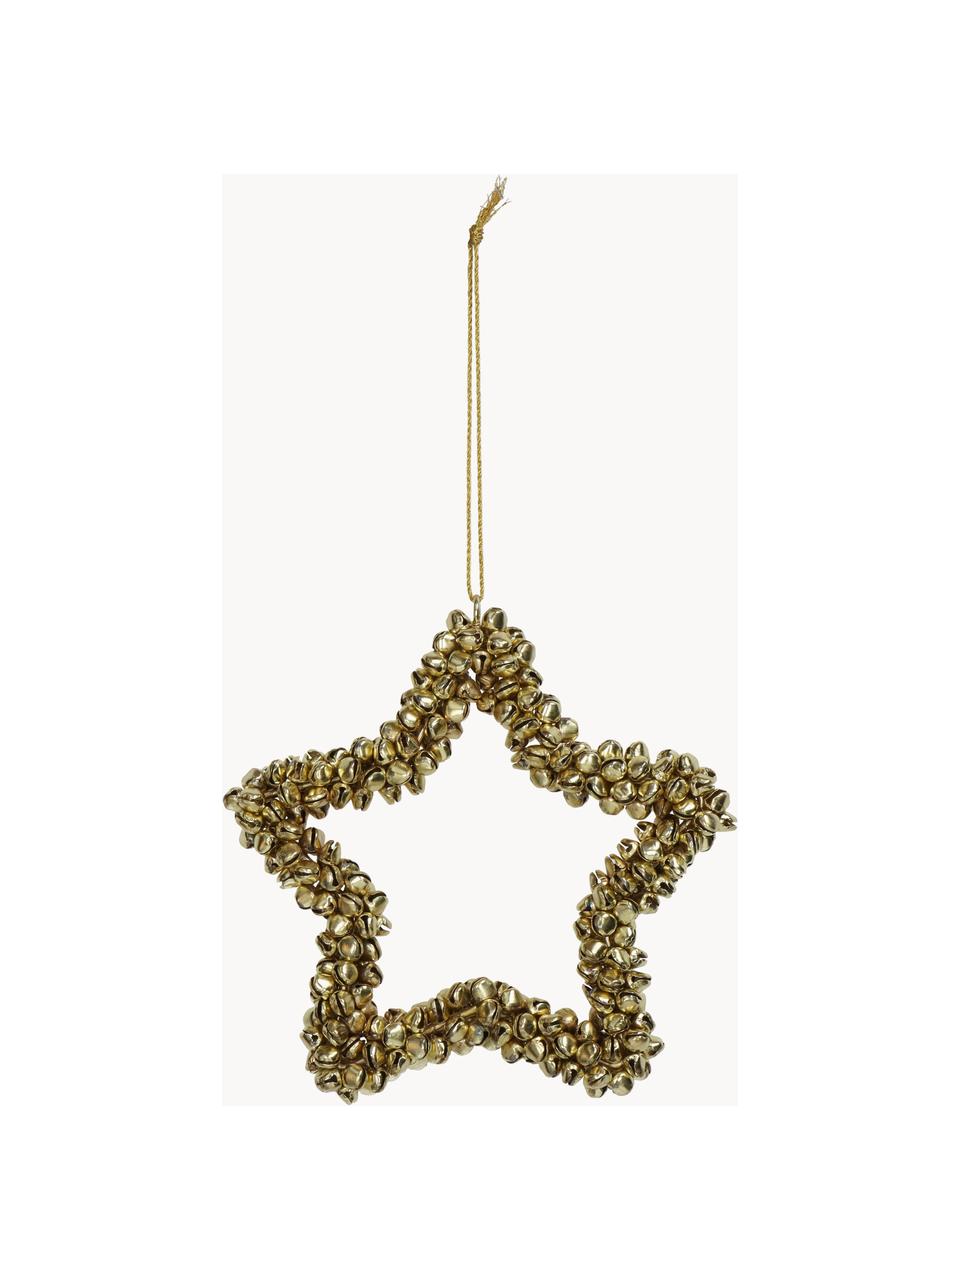 Baumanhänger Star mit Glöckchen, Metall, beschichtet, Goldfarben, B 14 x H 14 cm